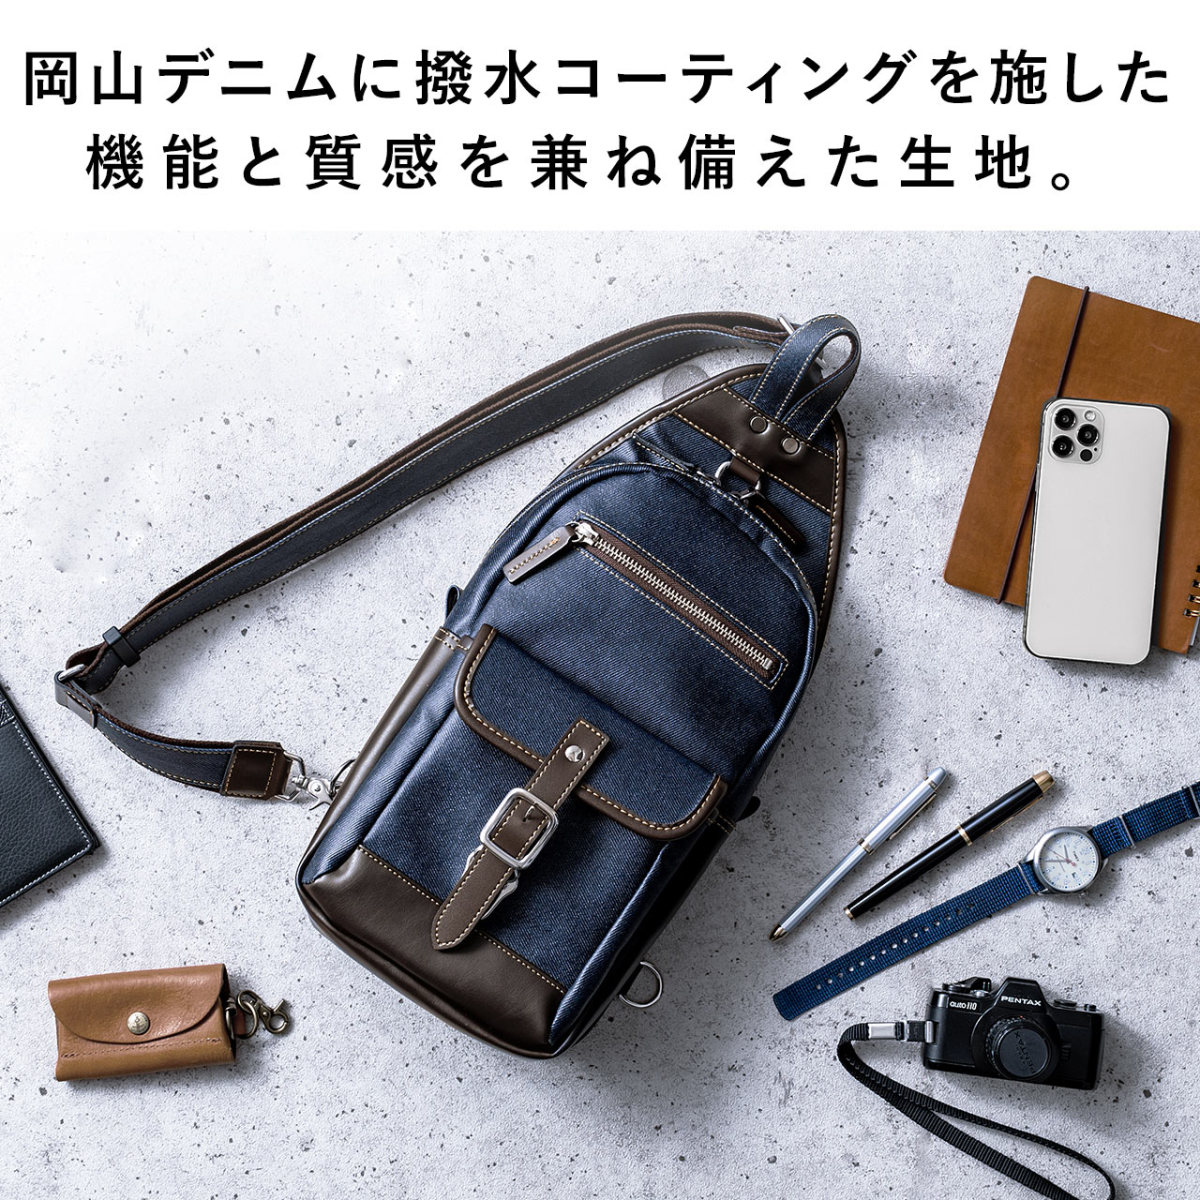 ボディバッグ メンズ ショルダーバッグ 簡易防水 撥水 日本製 豊岡鞄 